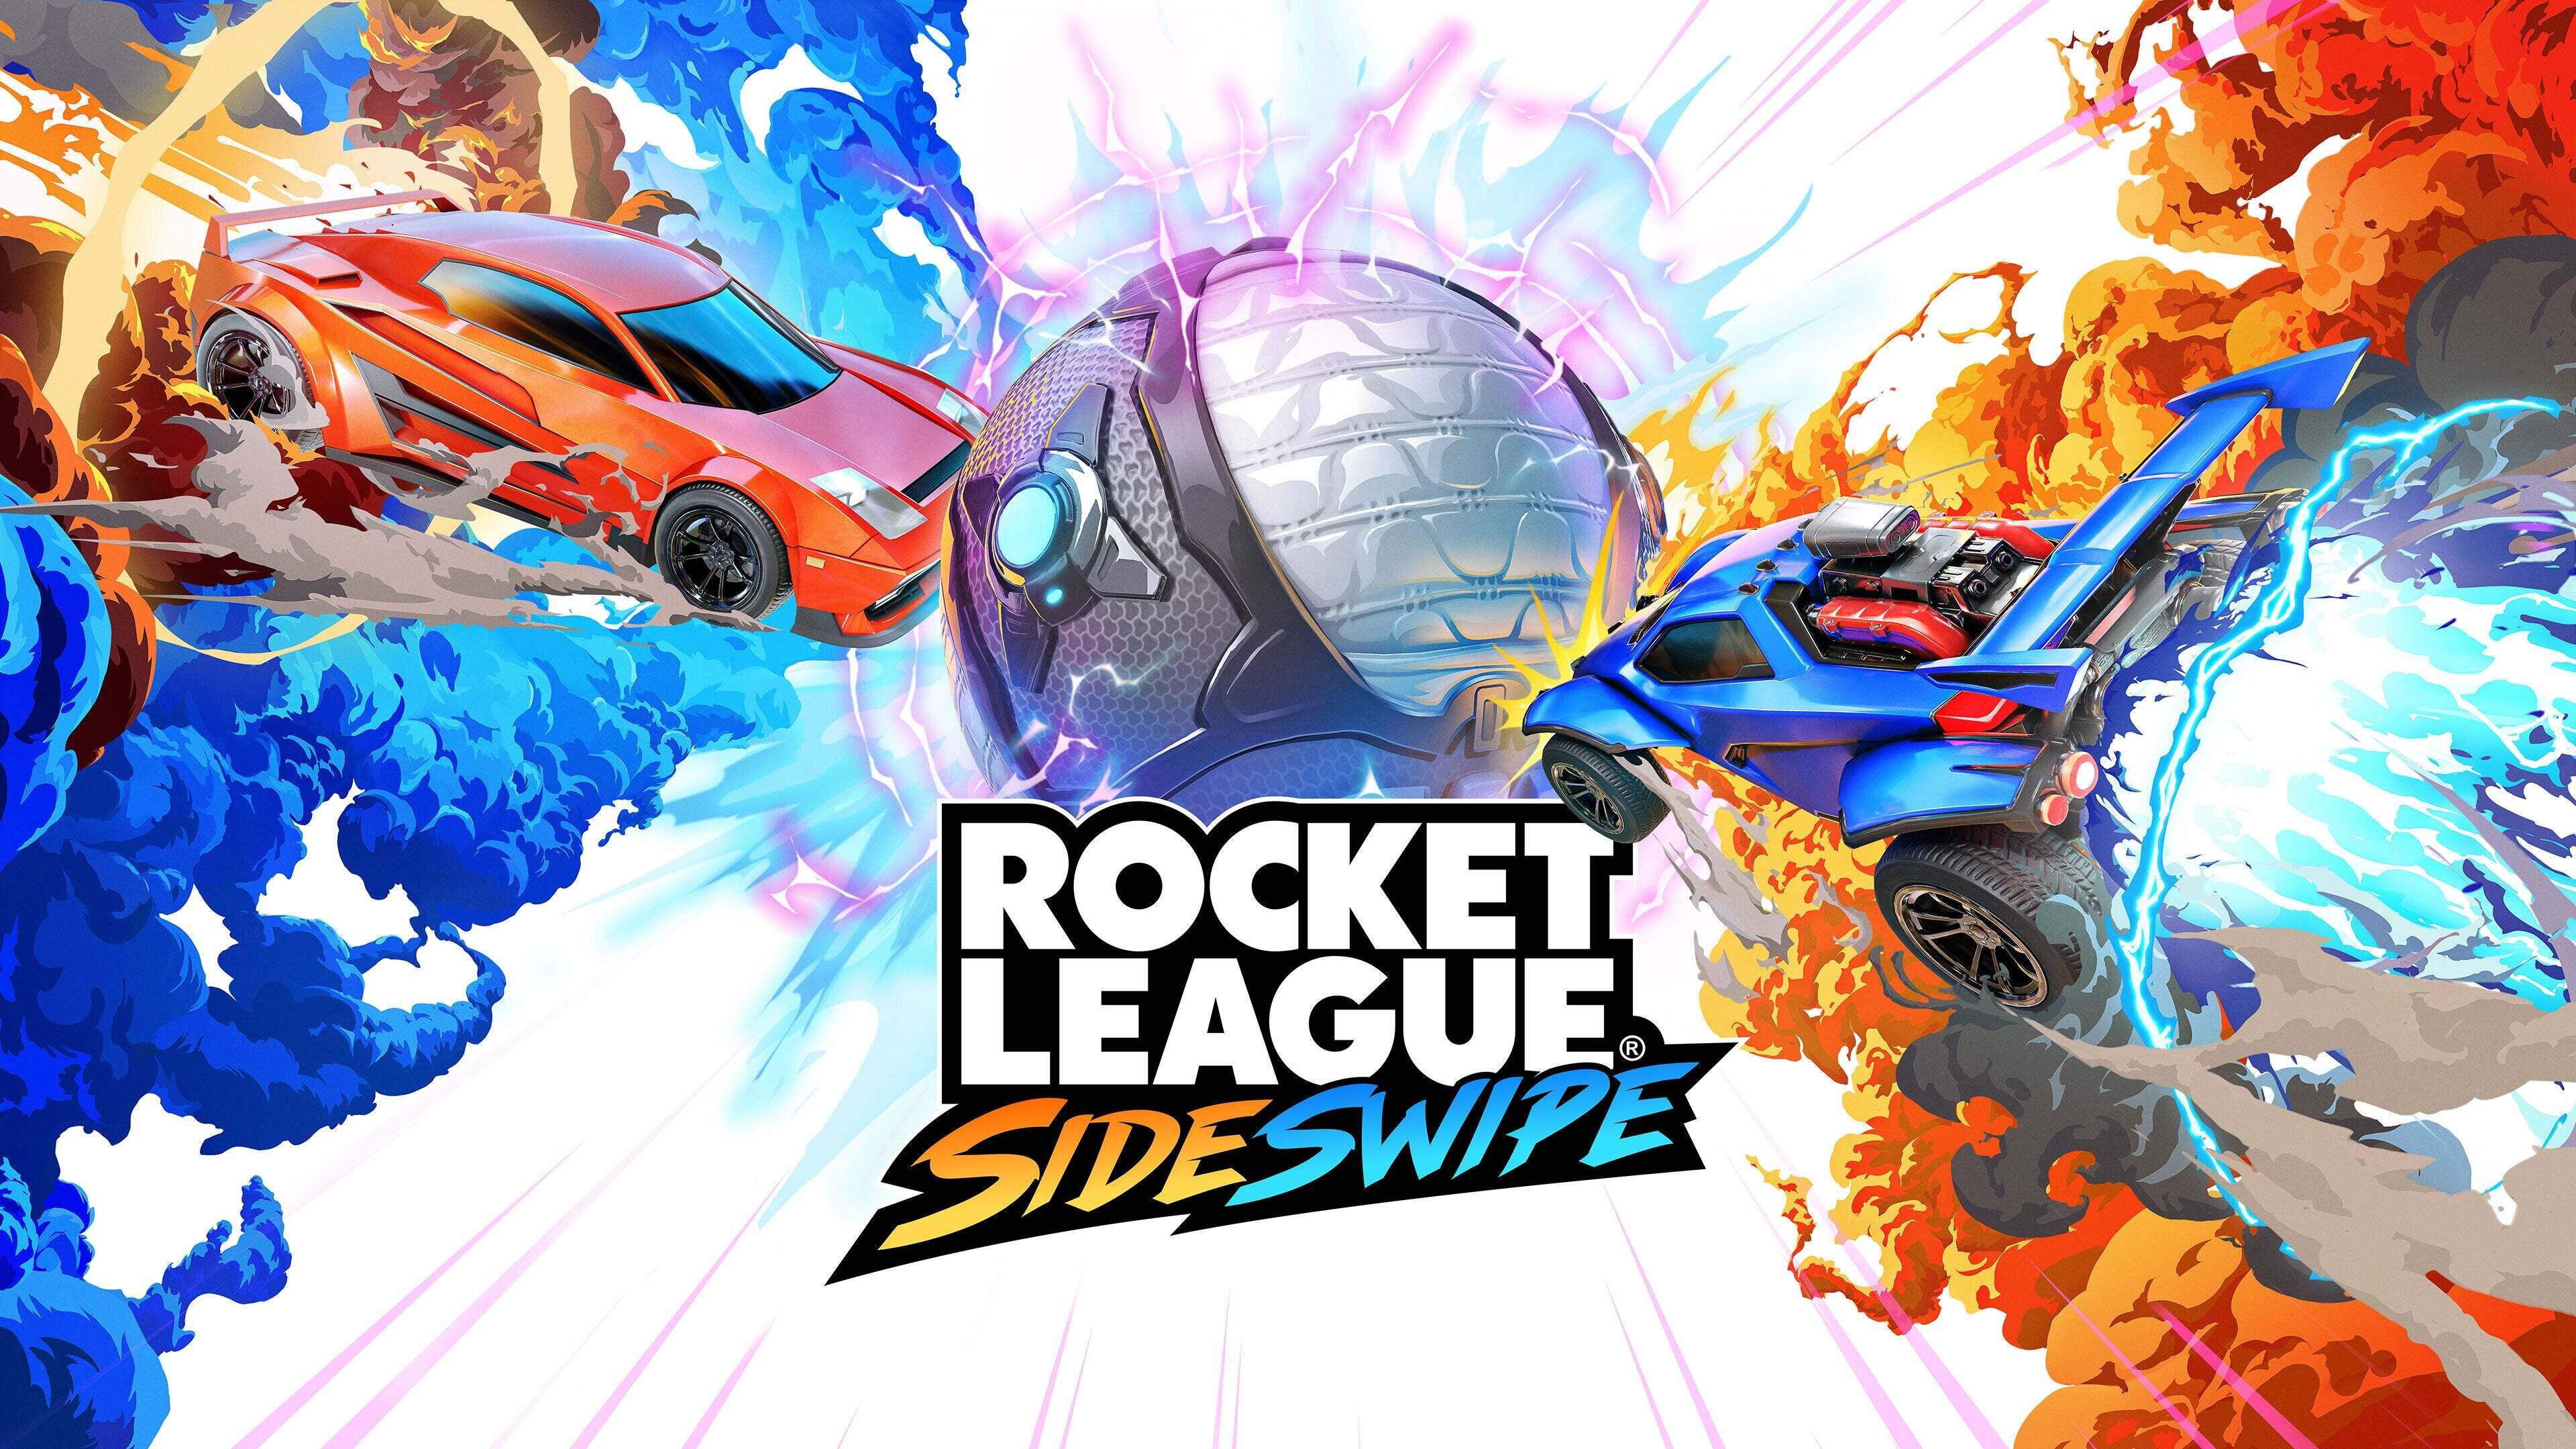 League sideswipe download rocket Download Rocket